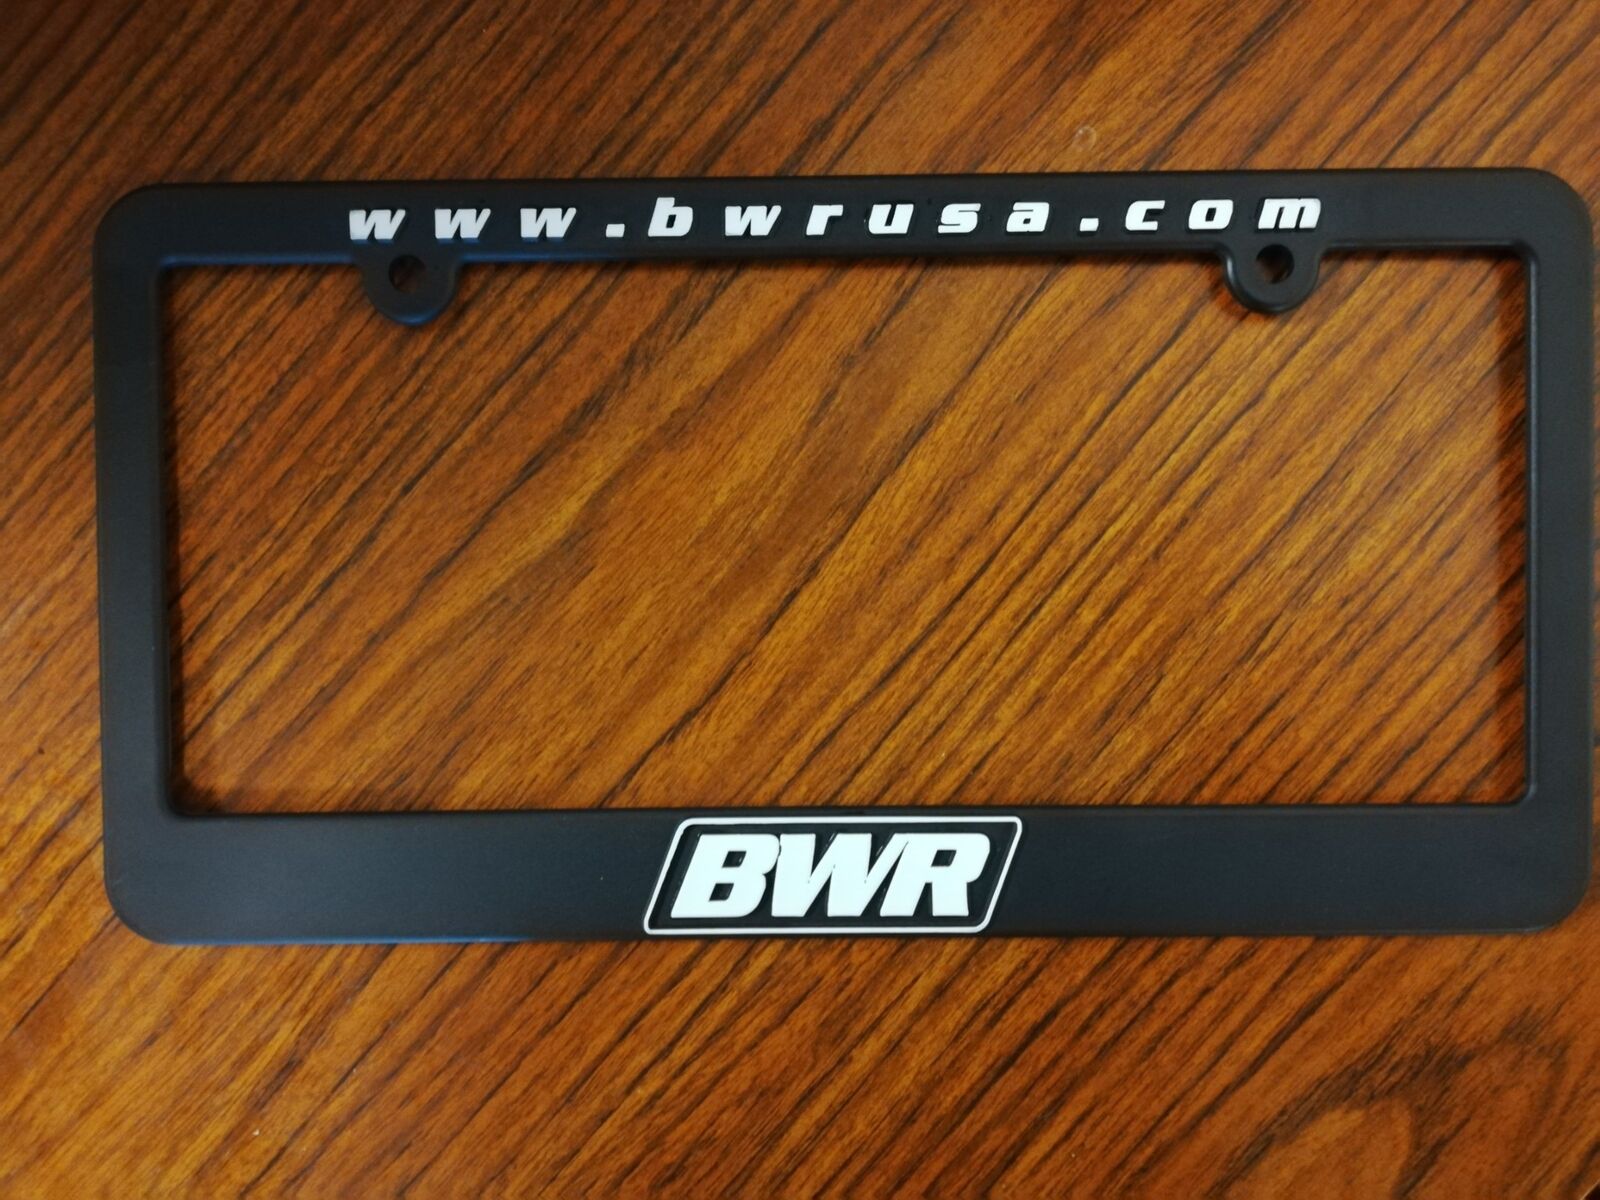 Blackworks Racing Bwr Official License Plate Frame